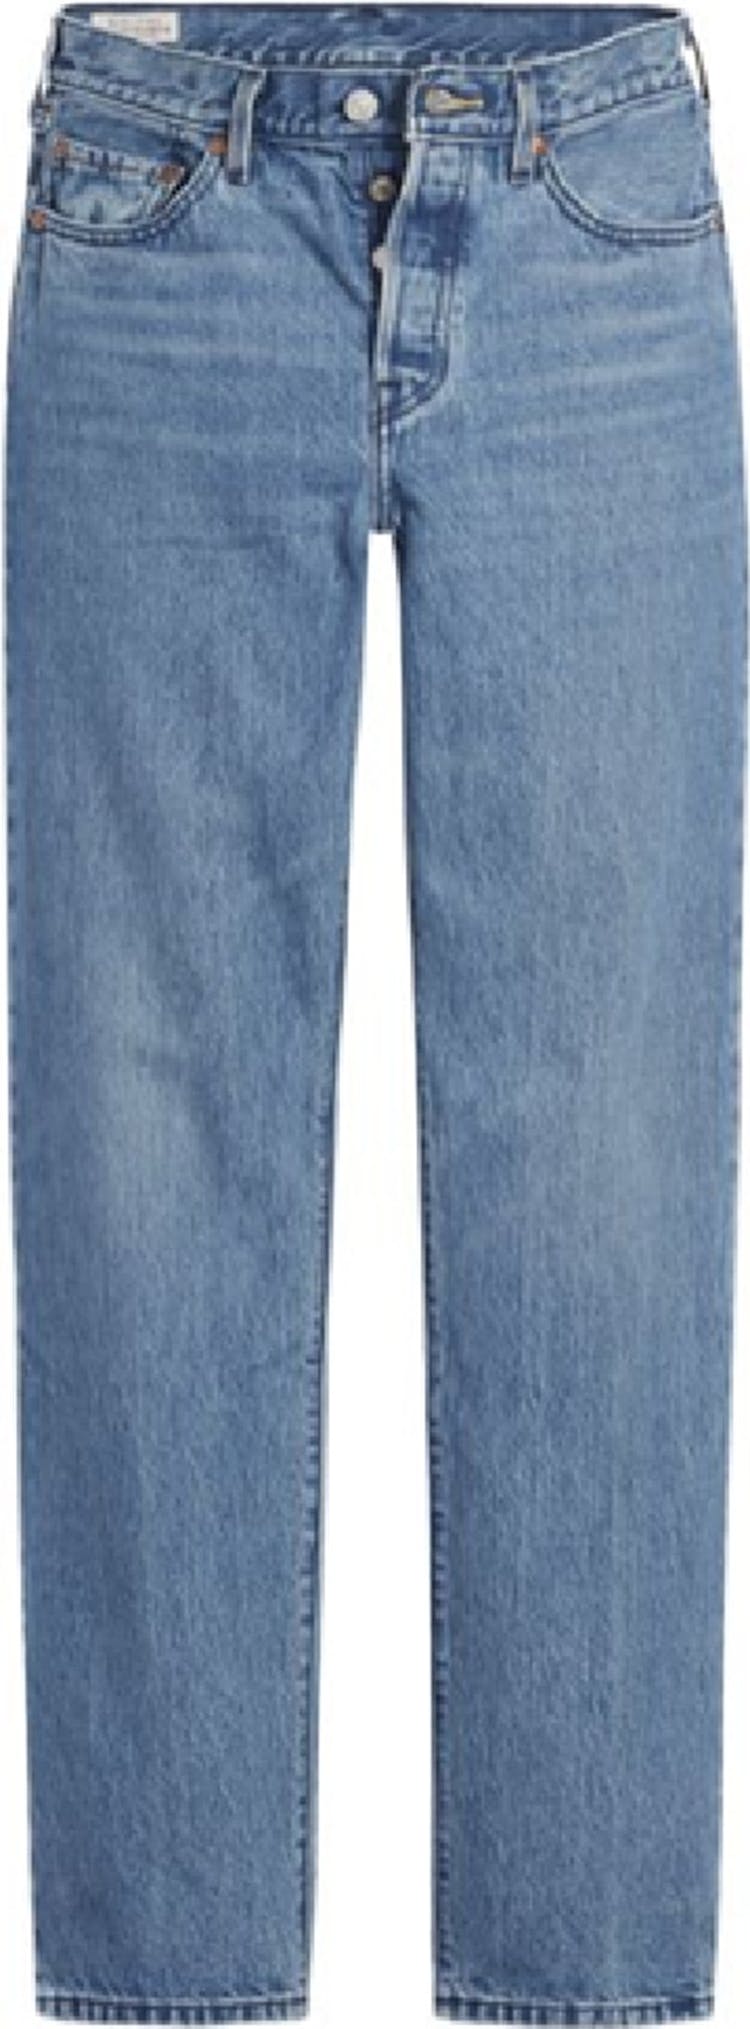 Numéro de l'image de la galerie de produits 1 pour le produit Jeans 90s Original 501 - Femme